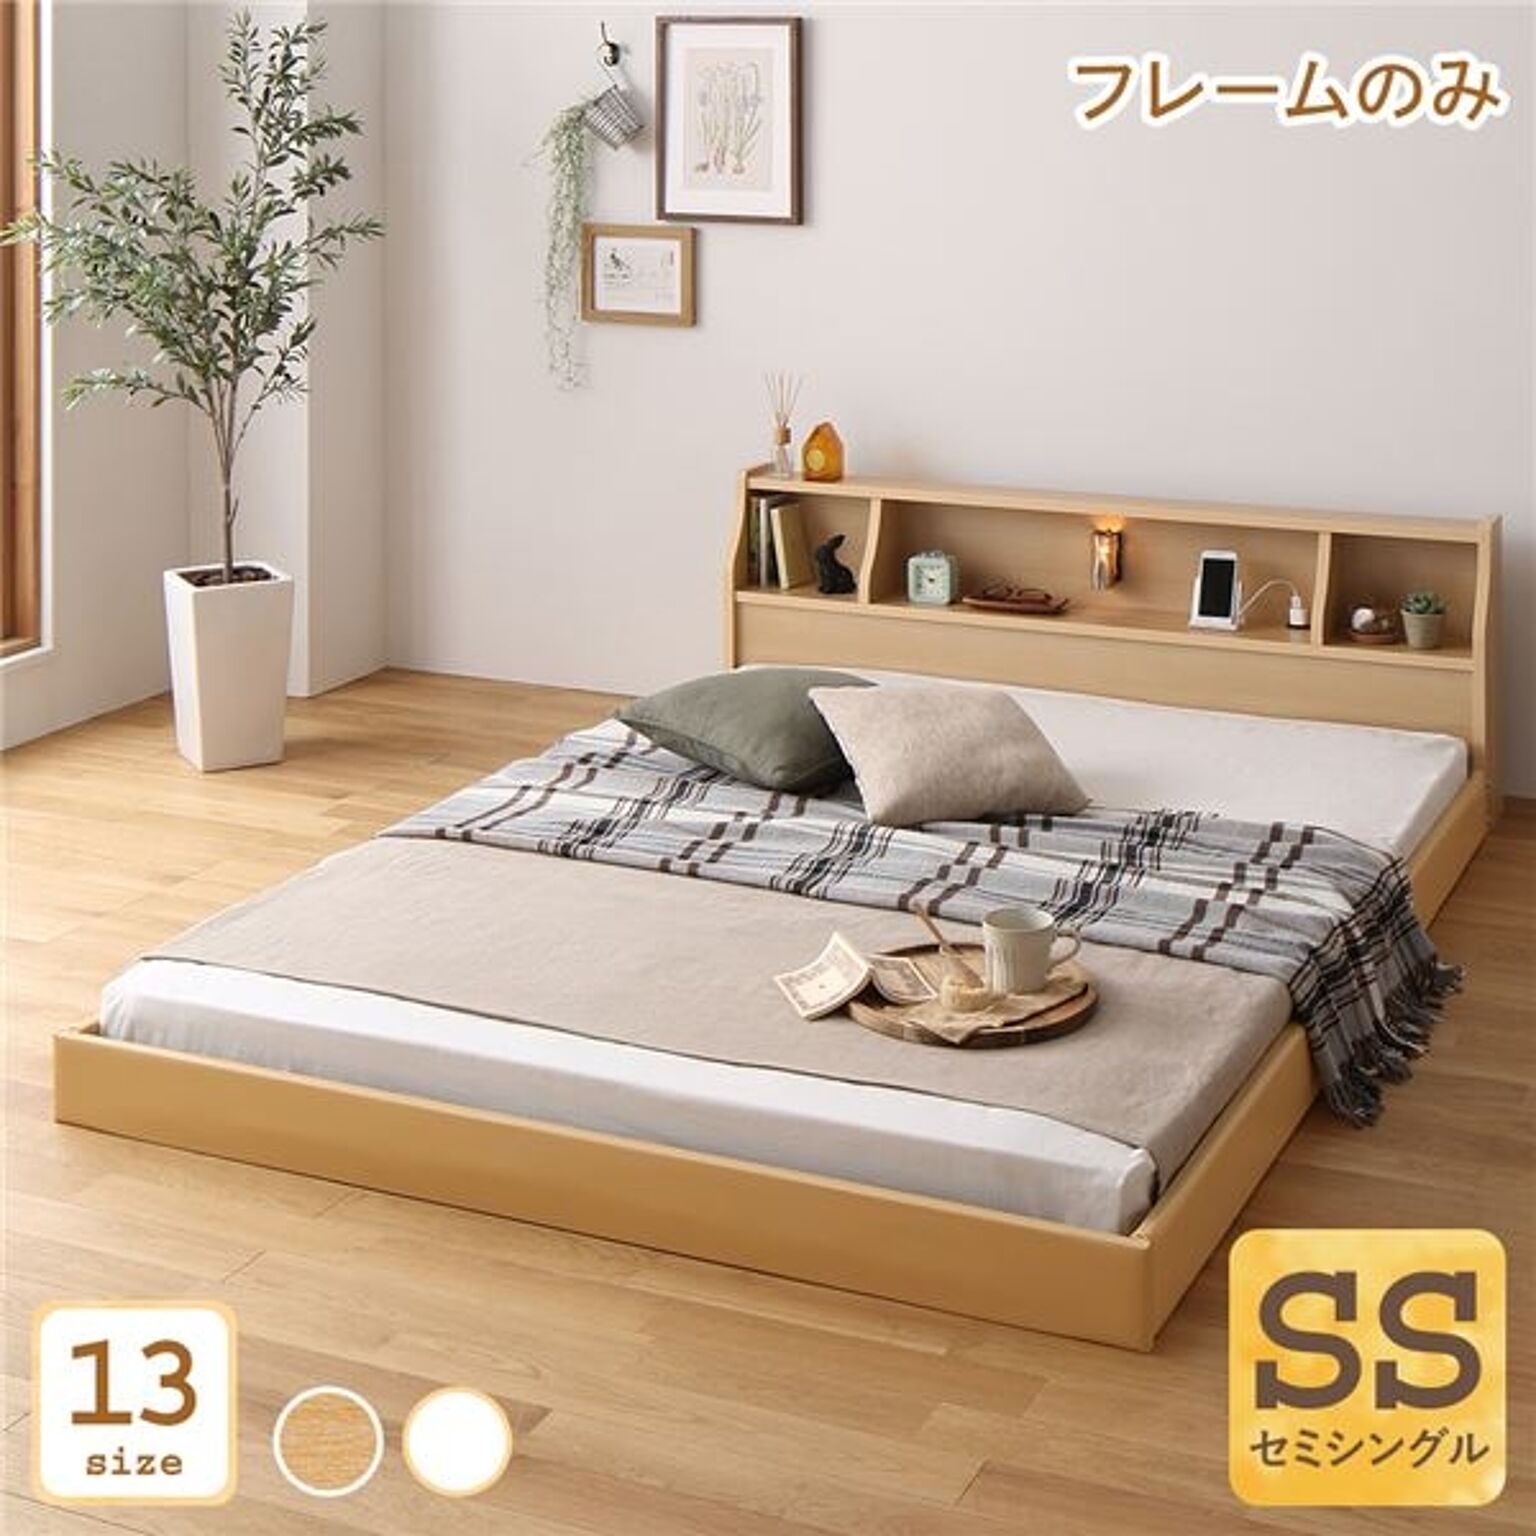 日本製 セミシングルベッド 低床 連結可能 ロータイプ 木製 照明・棚